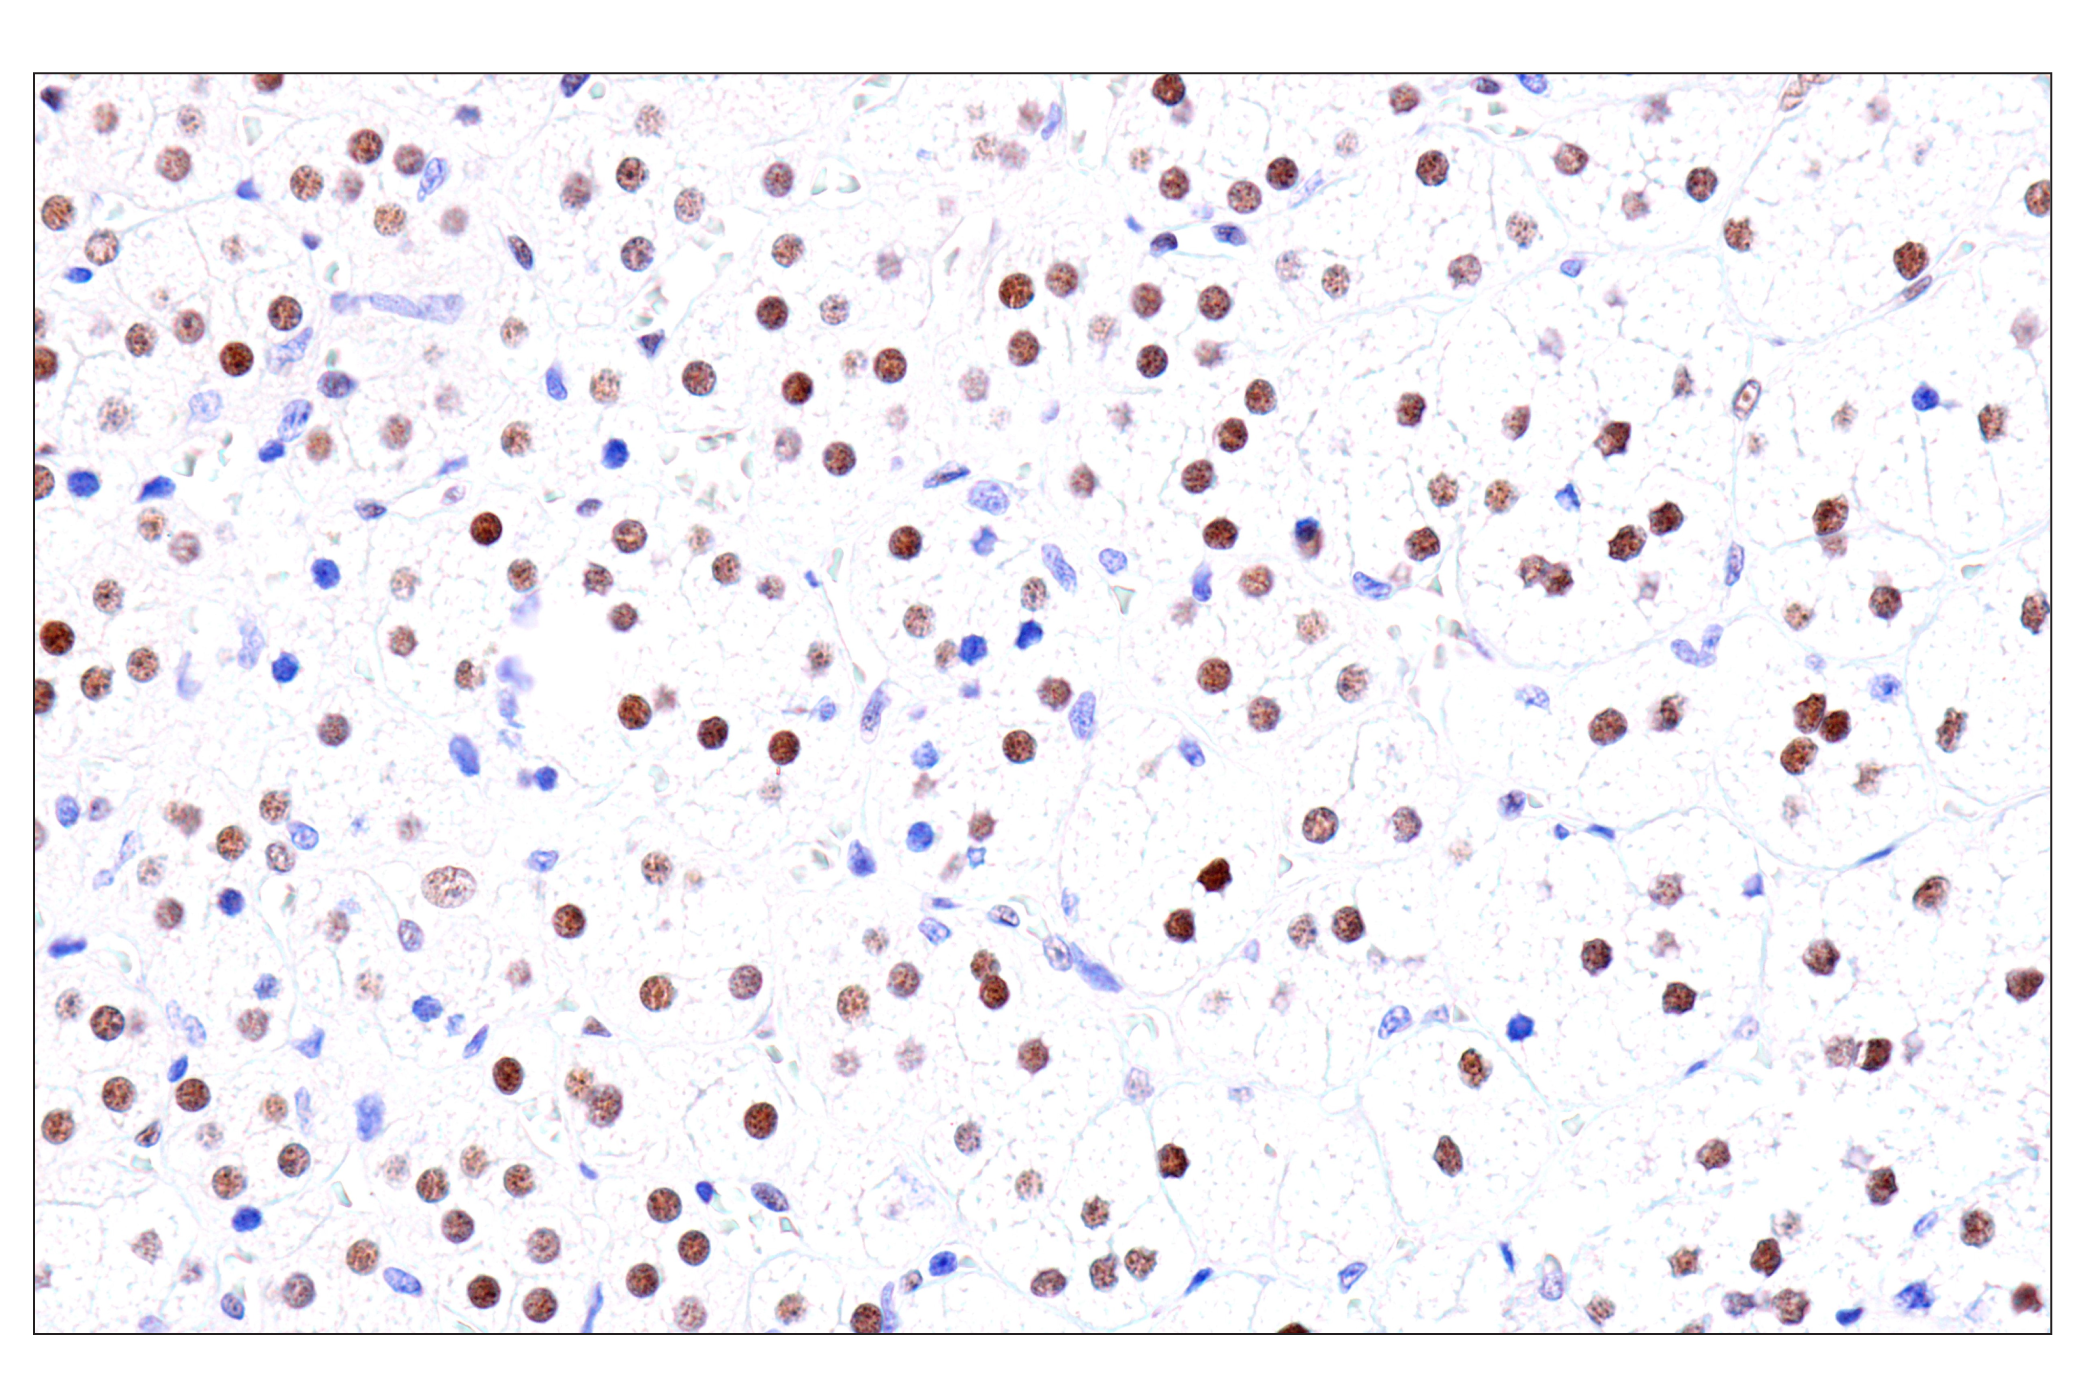  Image 55: GATA Transcription Factor Antibody Sampler Kit